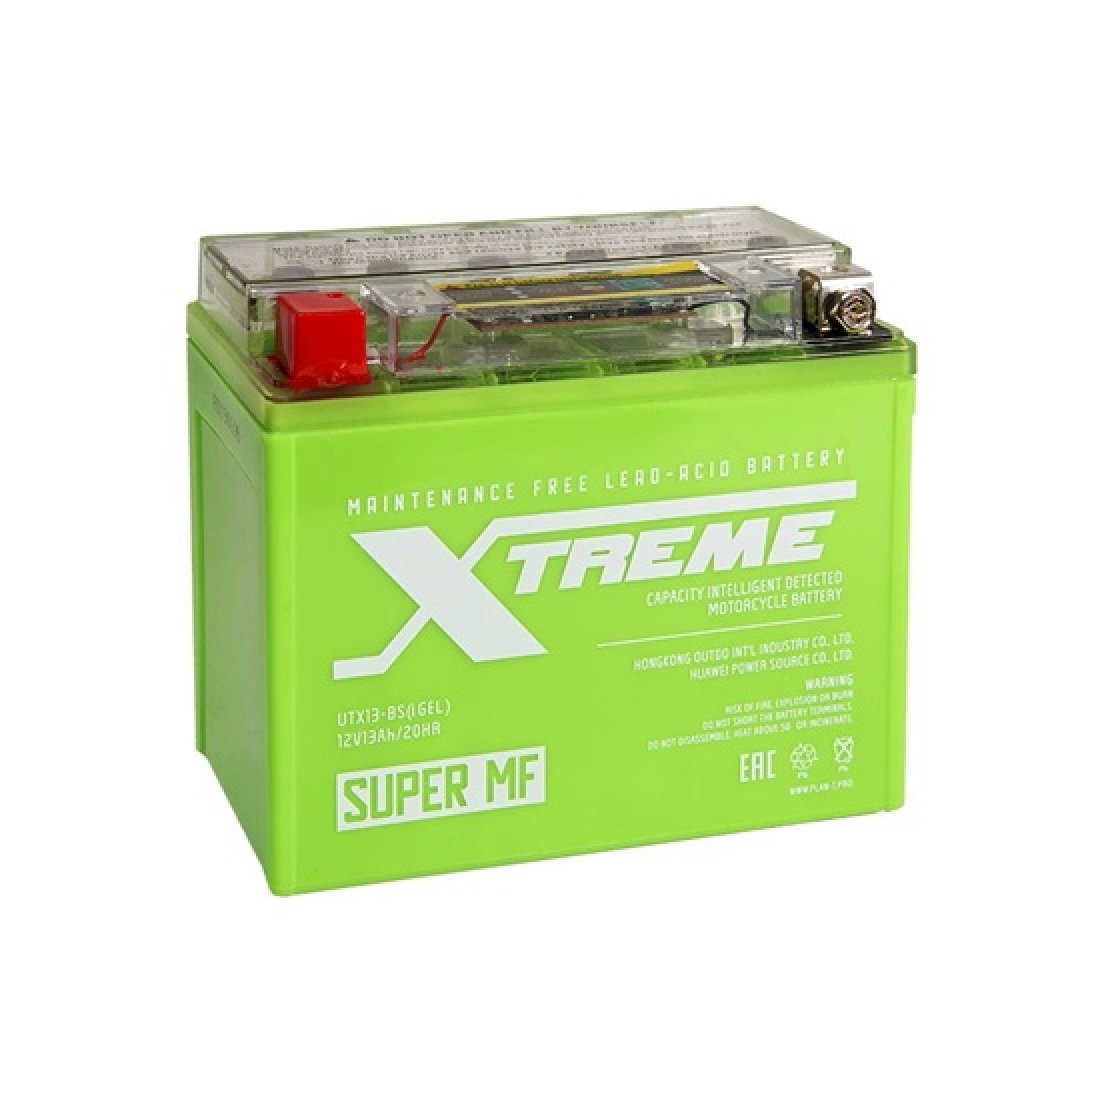 Гелевый для скутера. Мото аккумулятор Xtreme yt20l-4 Igel (20ah). Аккумулятор Xtreme utx13-BS. Аккумулятор outdo yt20l-4 Igel. Мото Xtreme 12n10-BS Igel (10ah) пр.